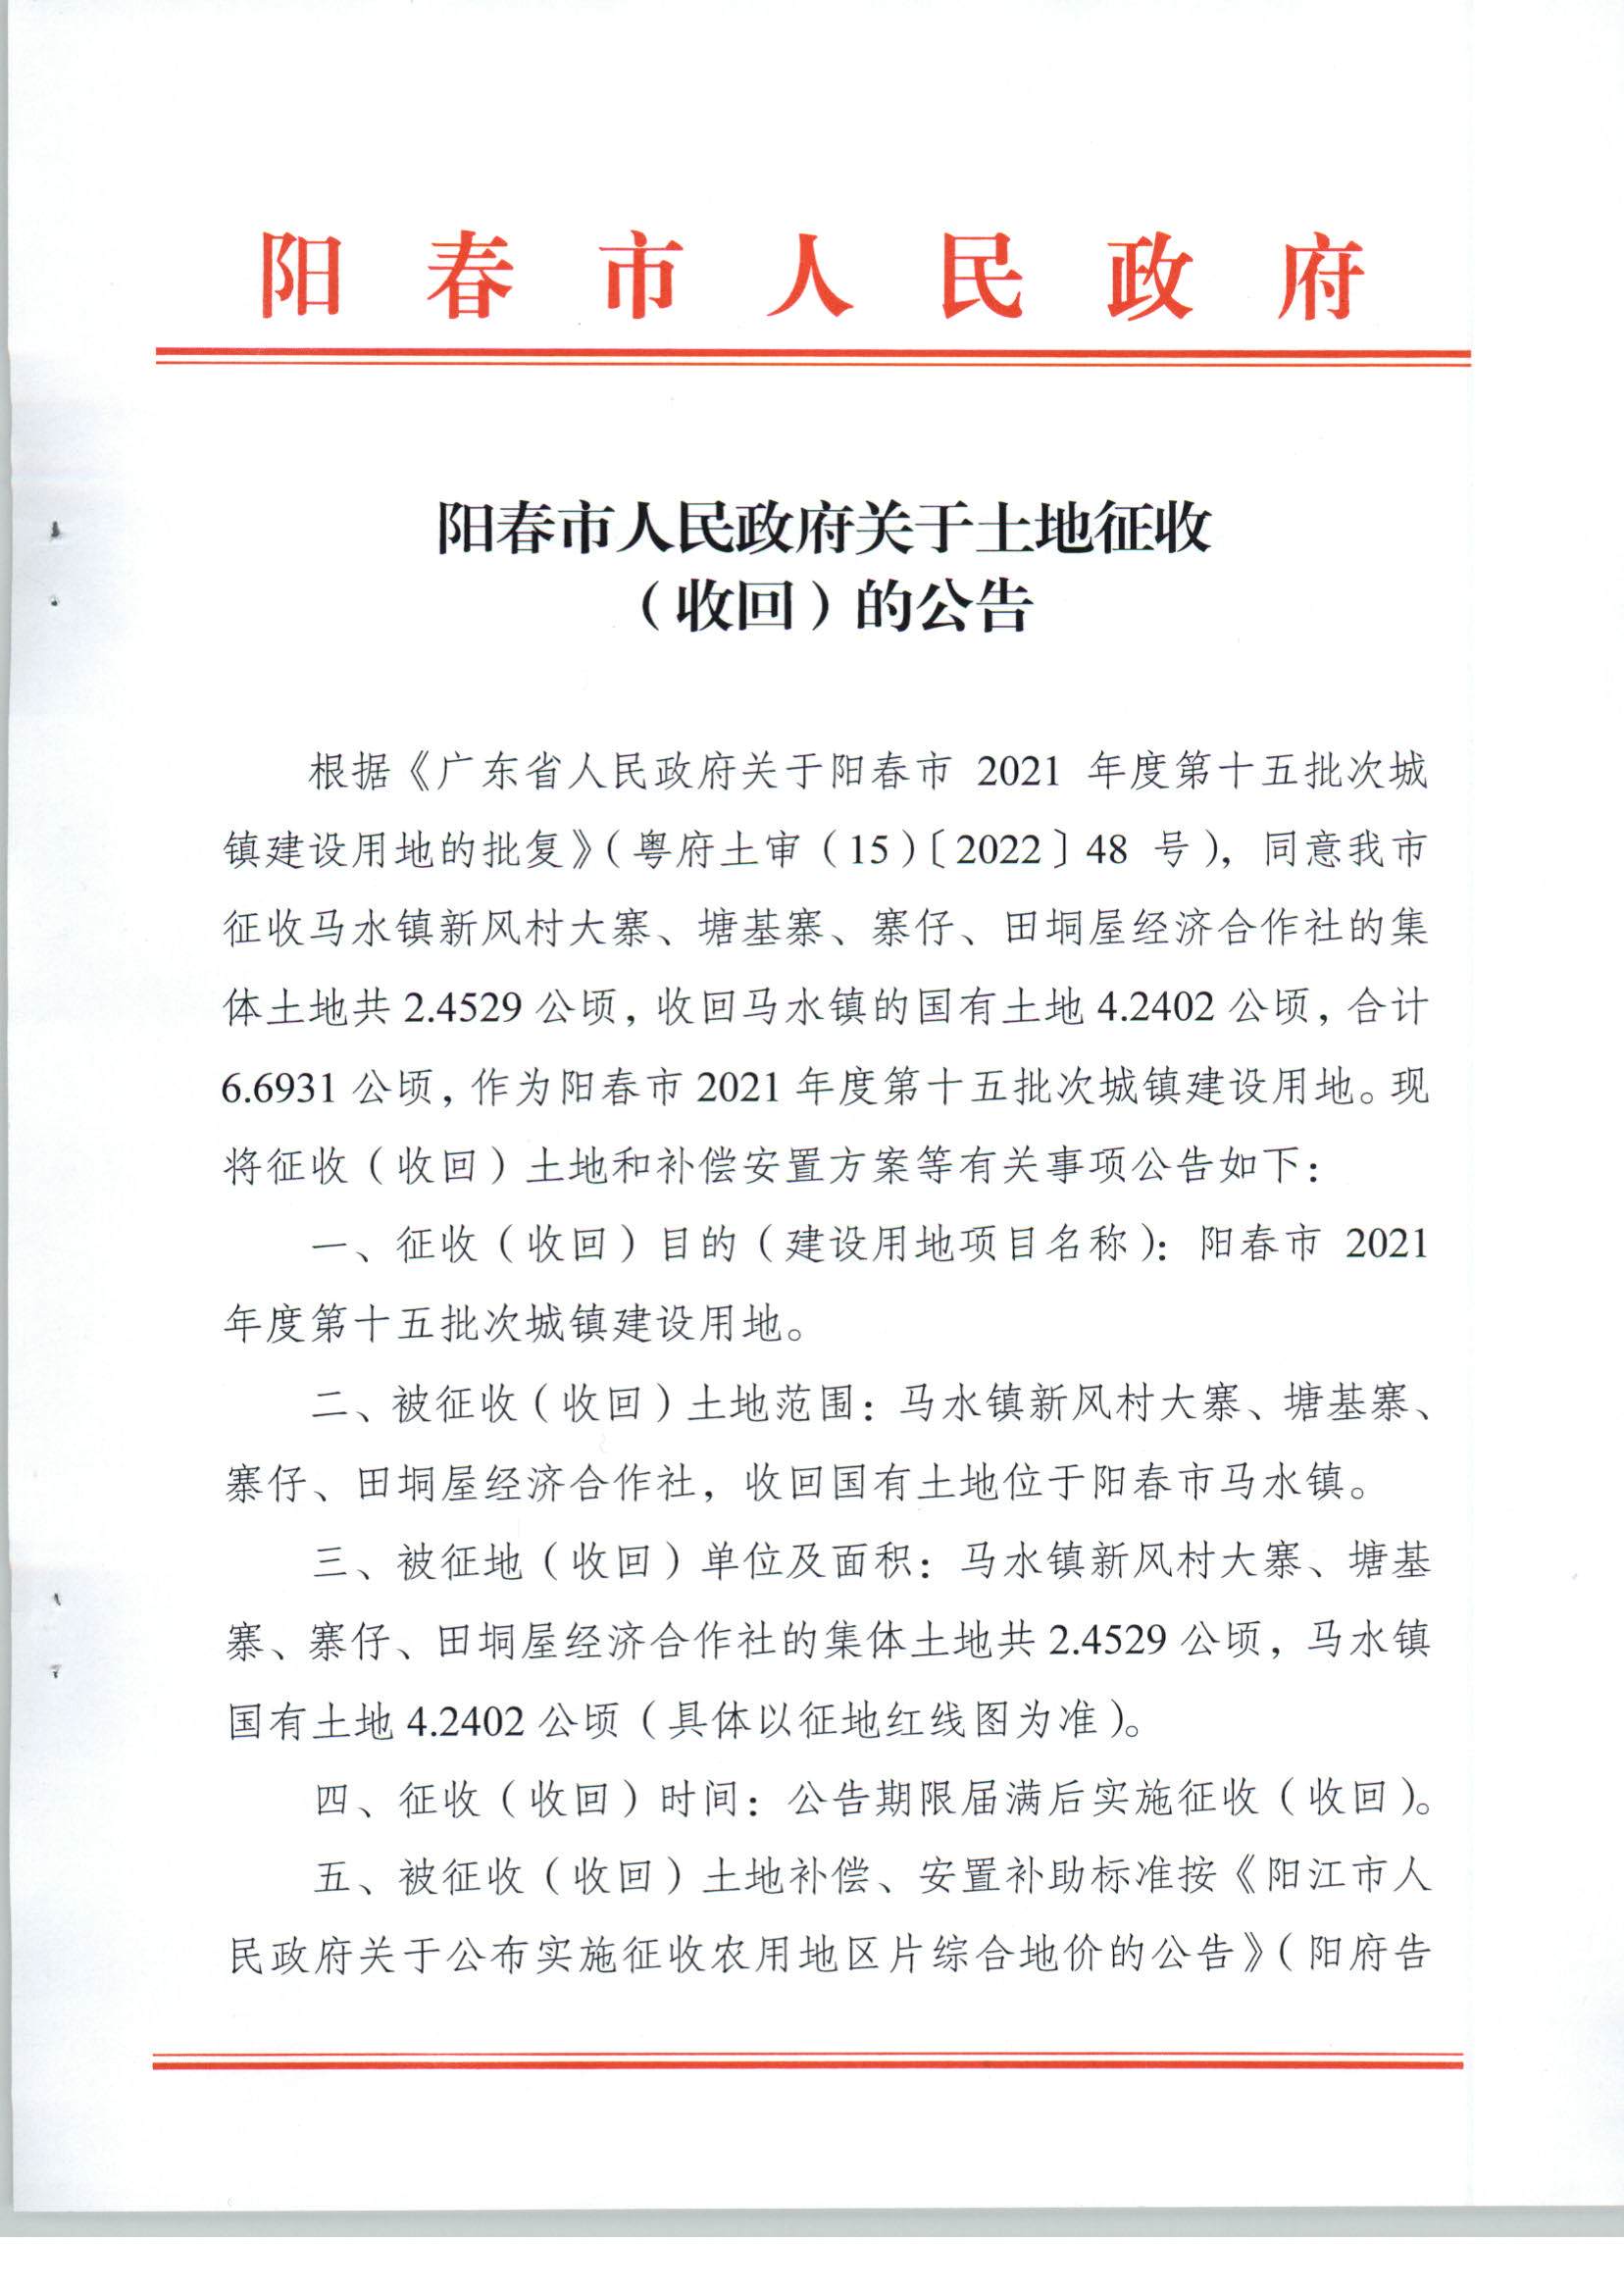 阳春市人民政府关于土地征收（收回）的公告（2021年度第十五批次）_页面_1.jpg